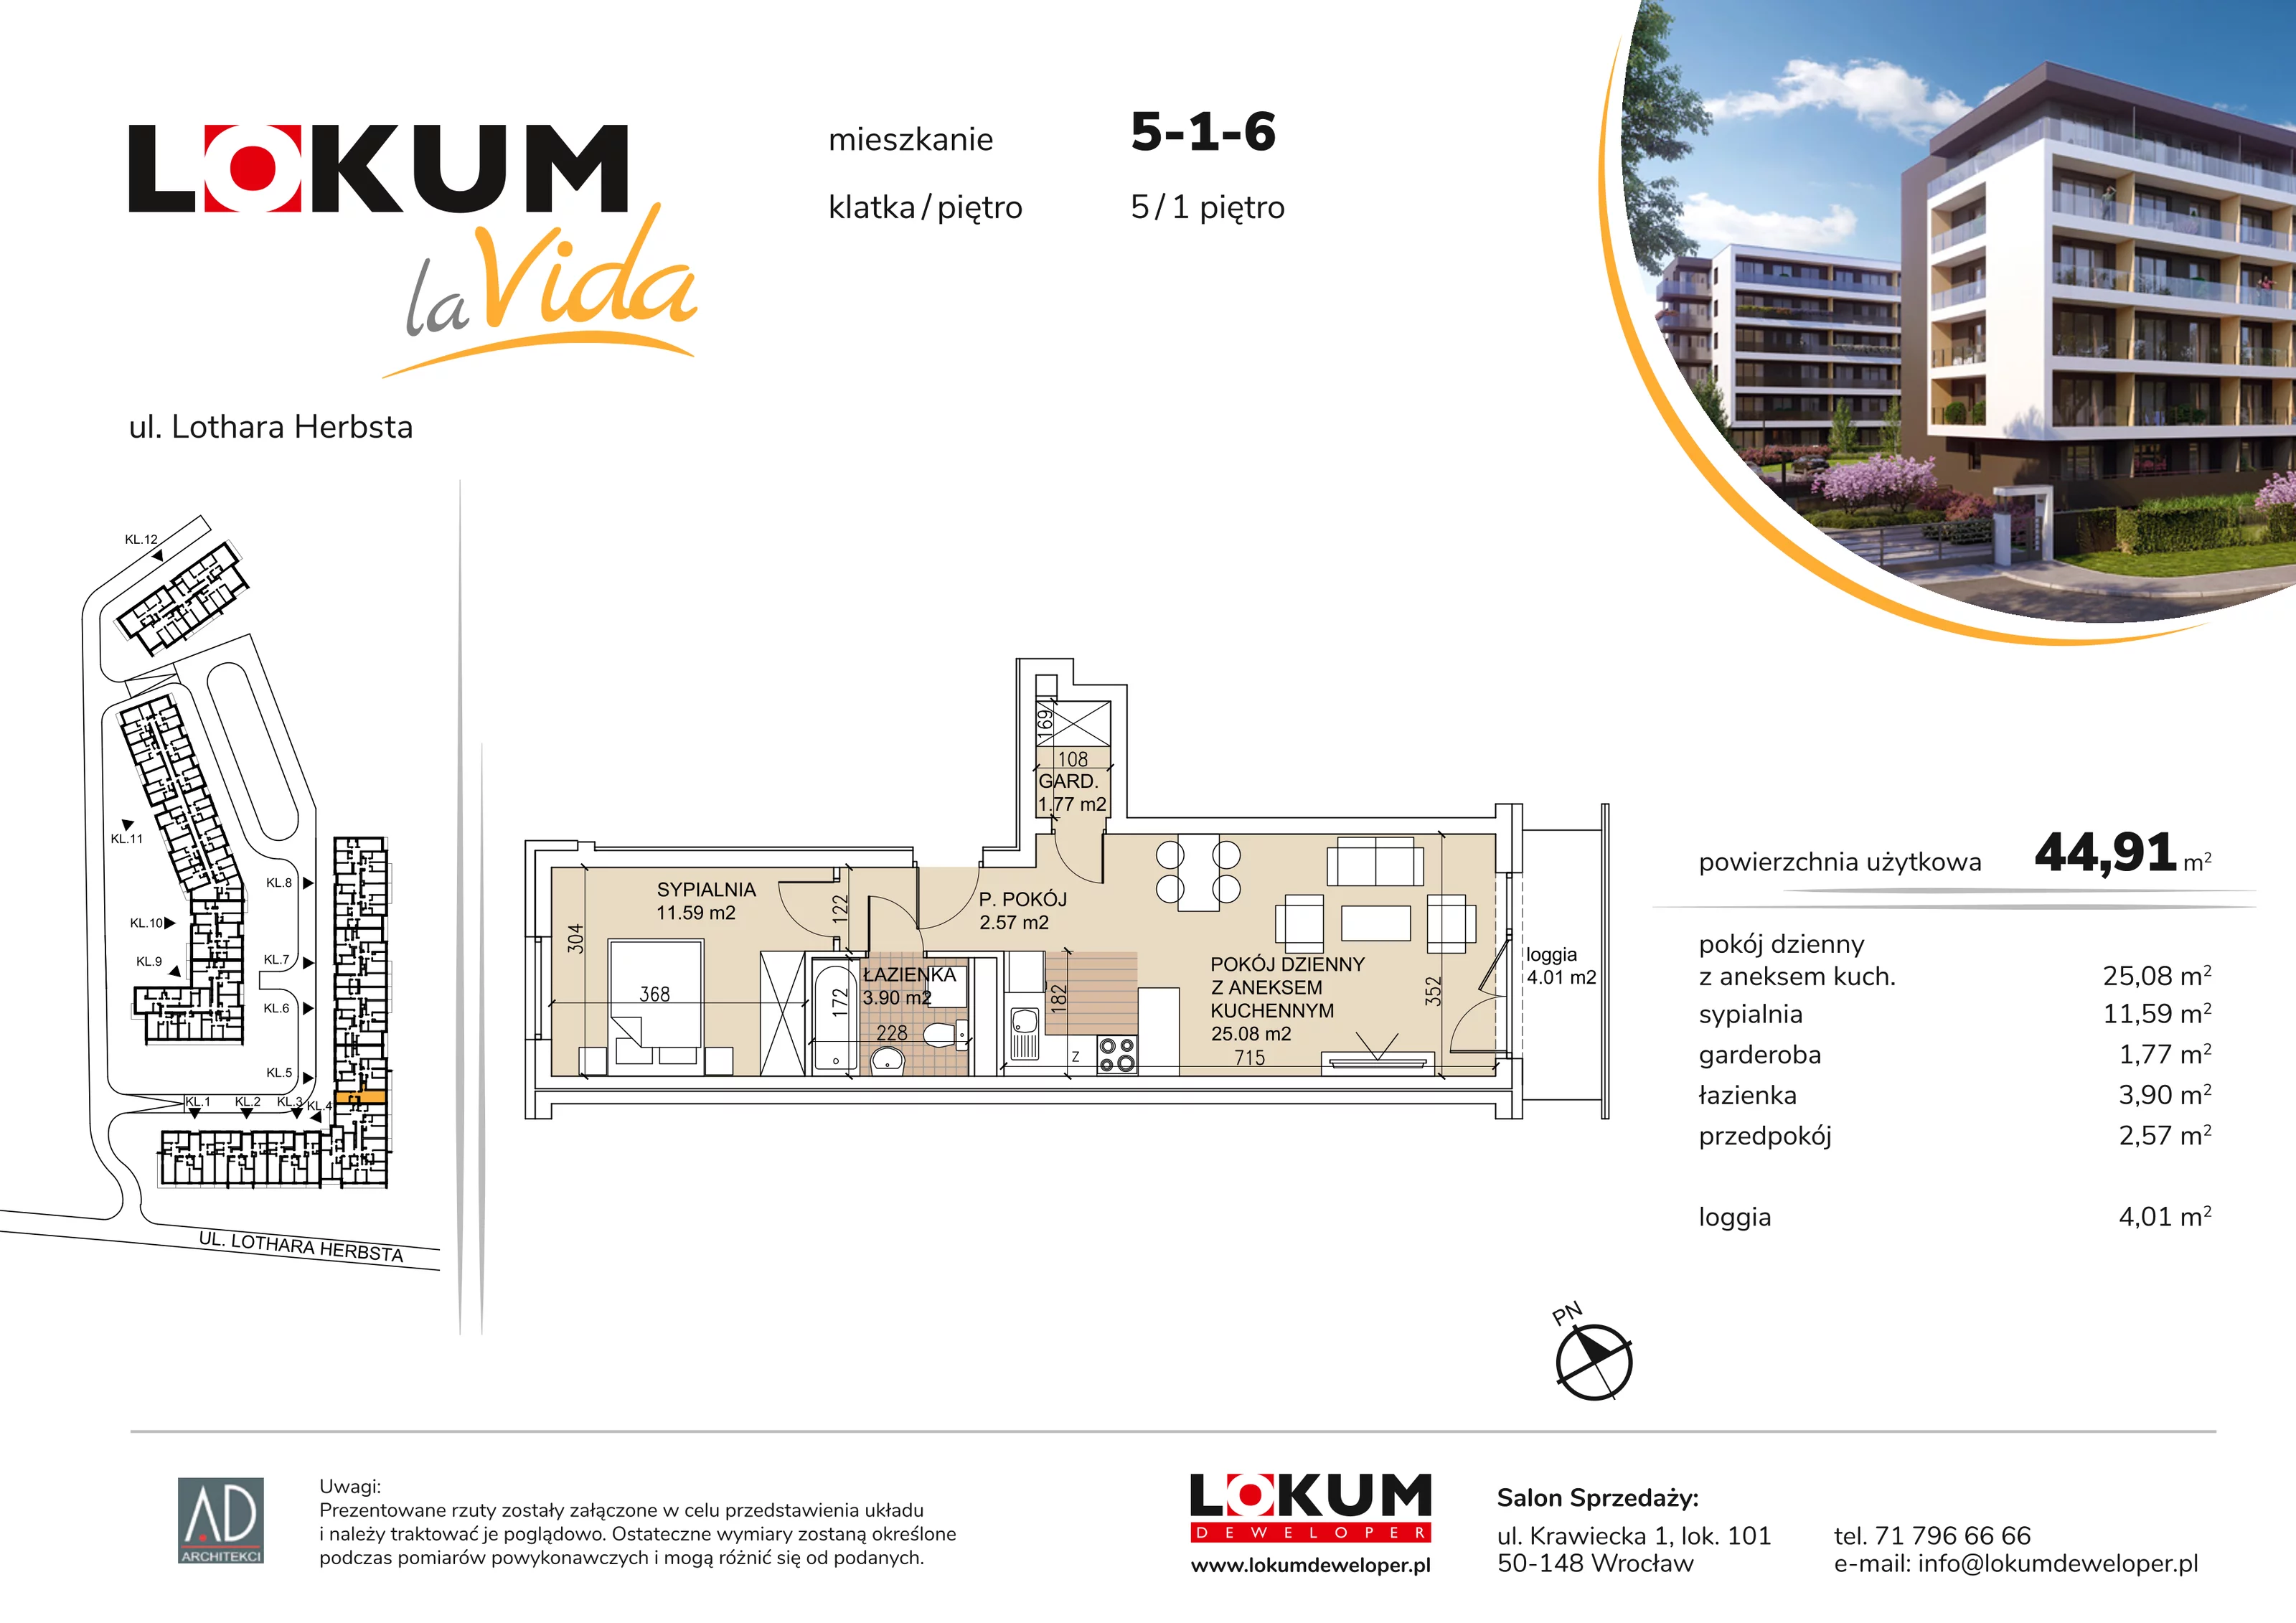 Mieszkanie 44,91 m², piętro 1, oferta nr 5-1-6, Lokum la Vida, Wrocław, Sołtysowice, ul. Lothara Herbsta